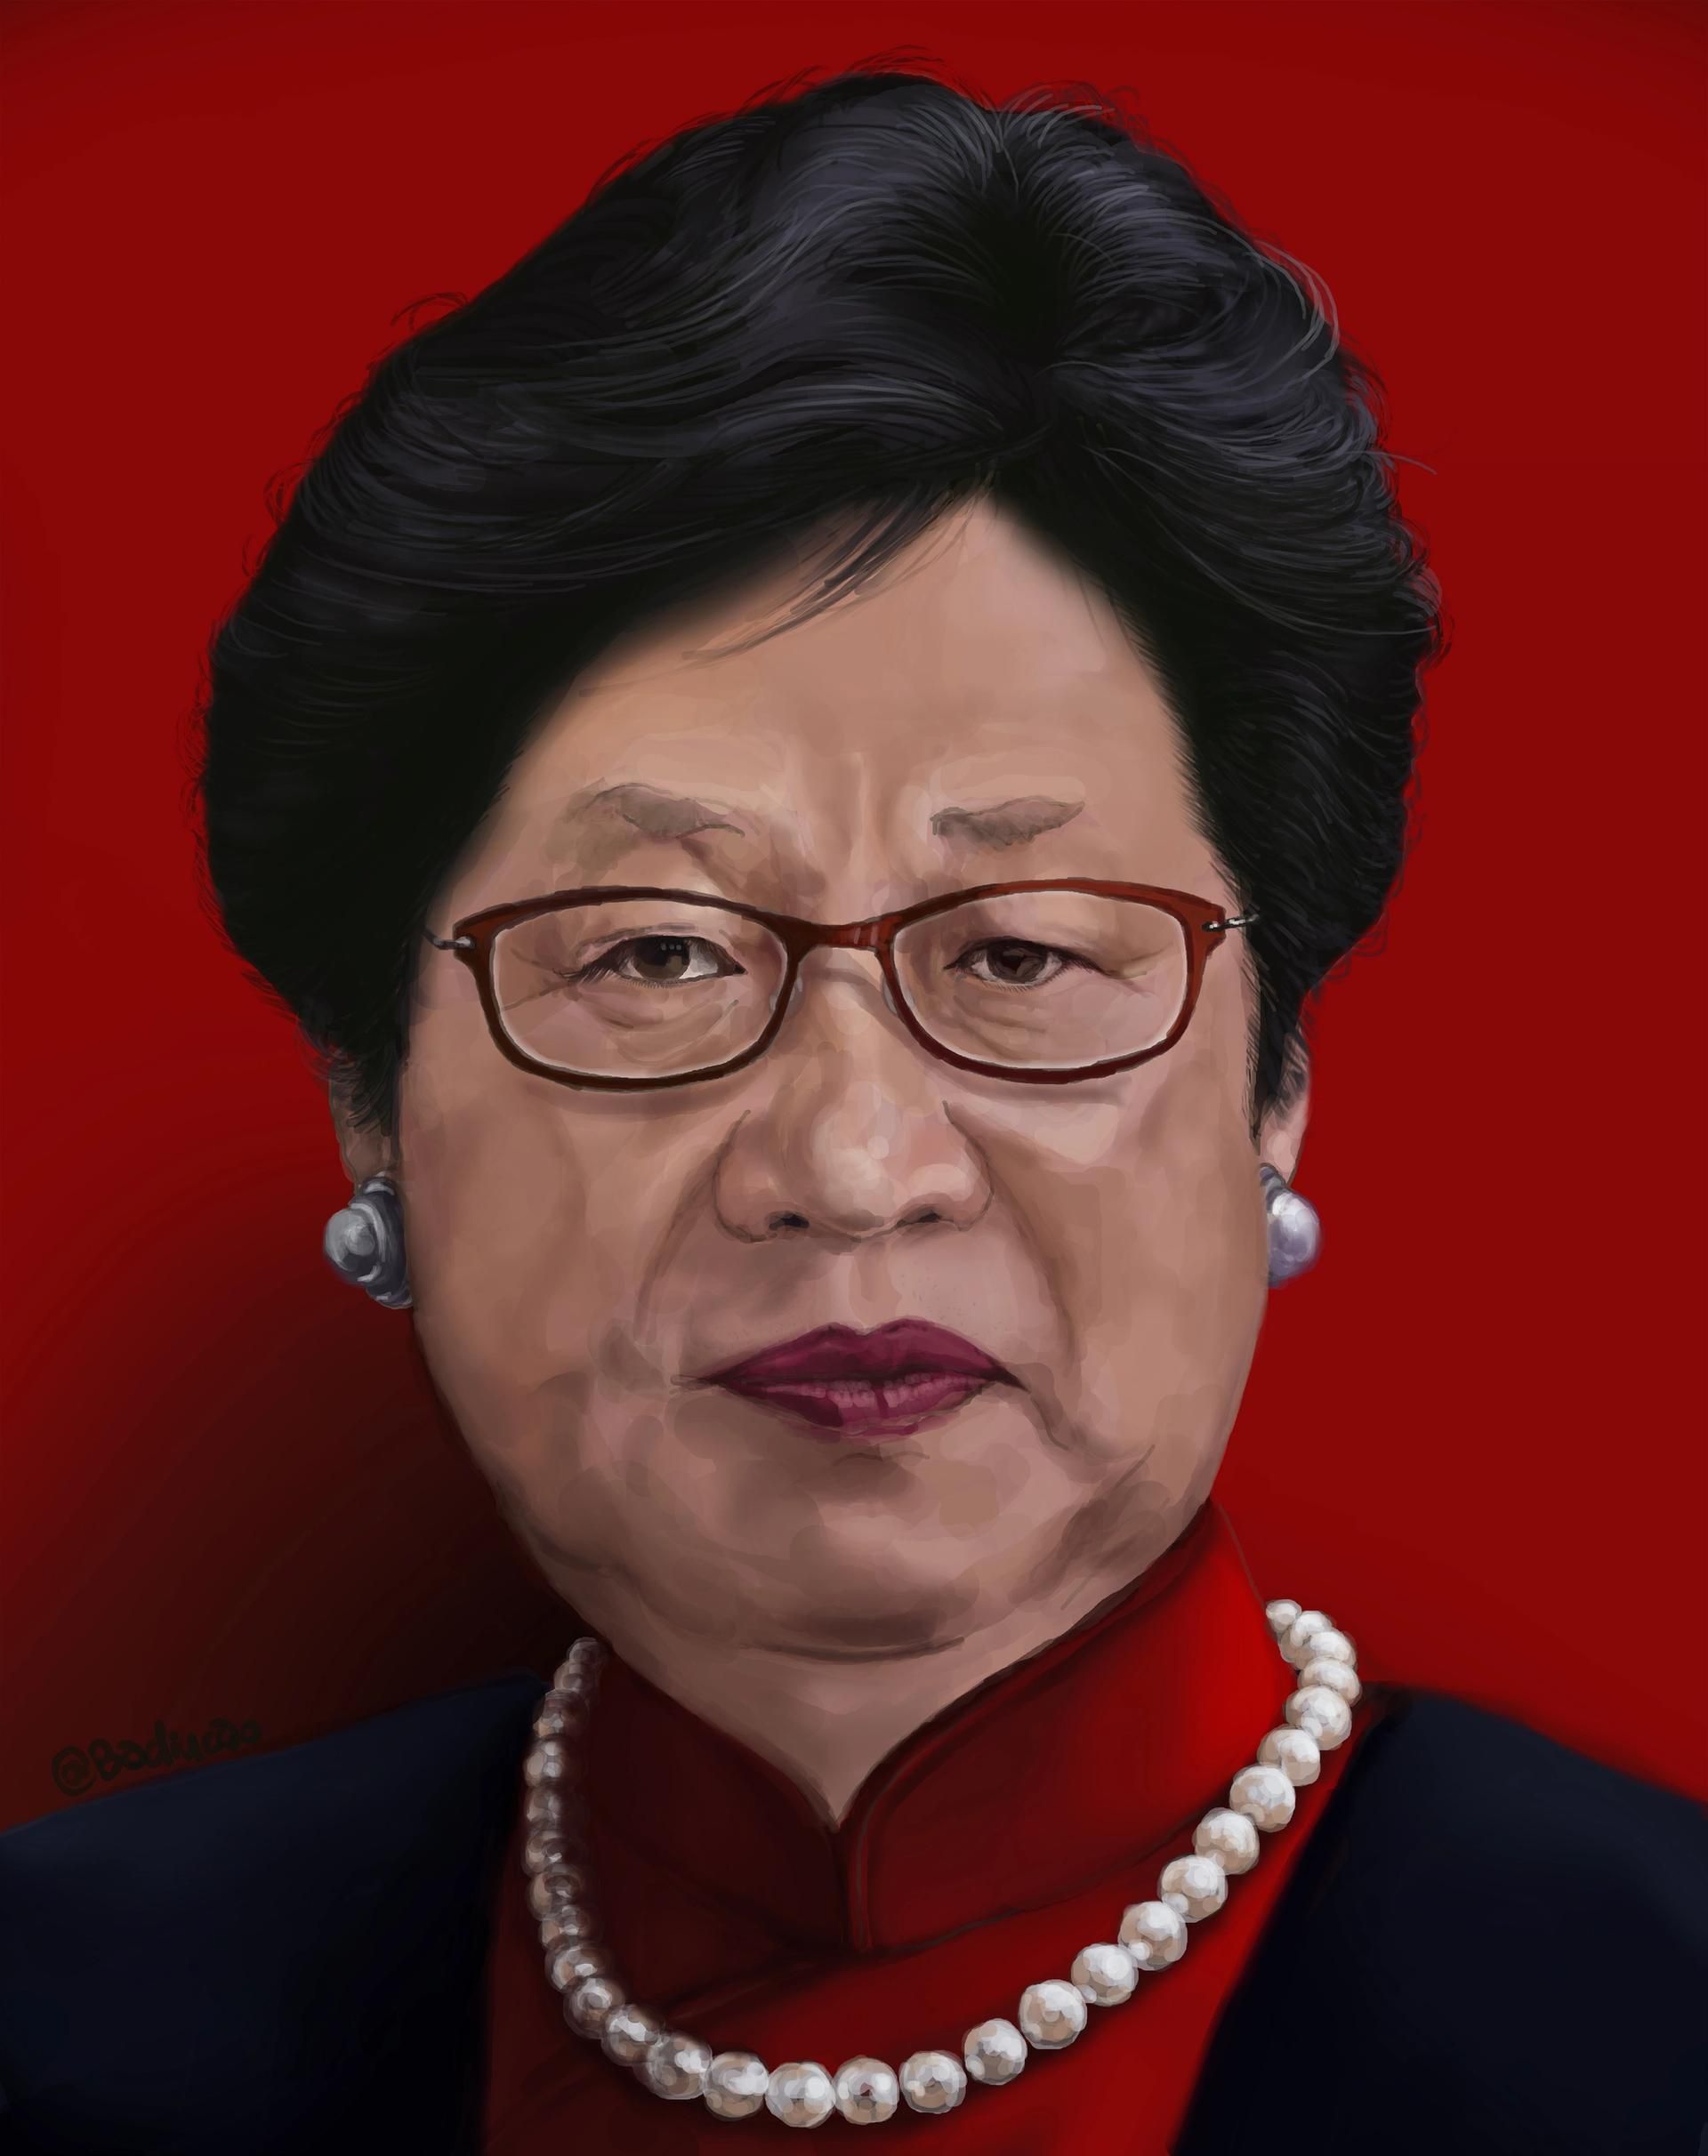 הקריקטורה של Badiucao משנת 2018 משלב את פניו של הנשיא שי ג'ינפינג עם פניה של מנכ"לית הונג קונג קארי לאם

©Badiucao